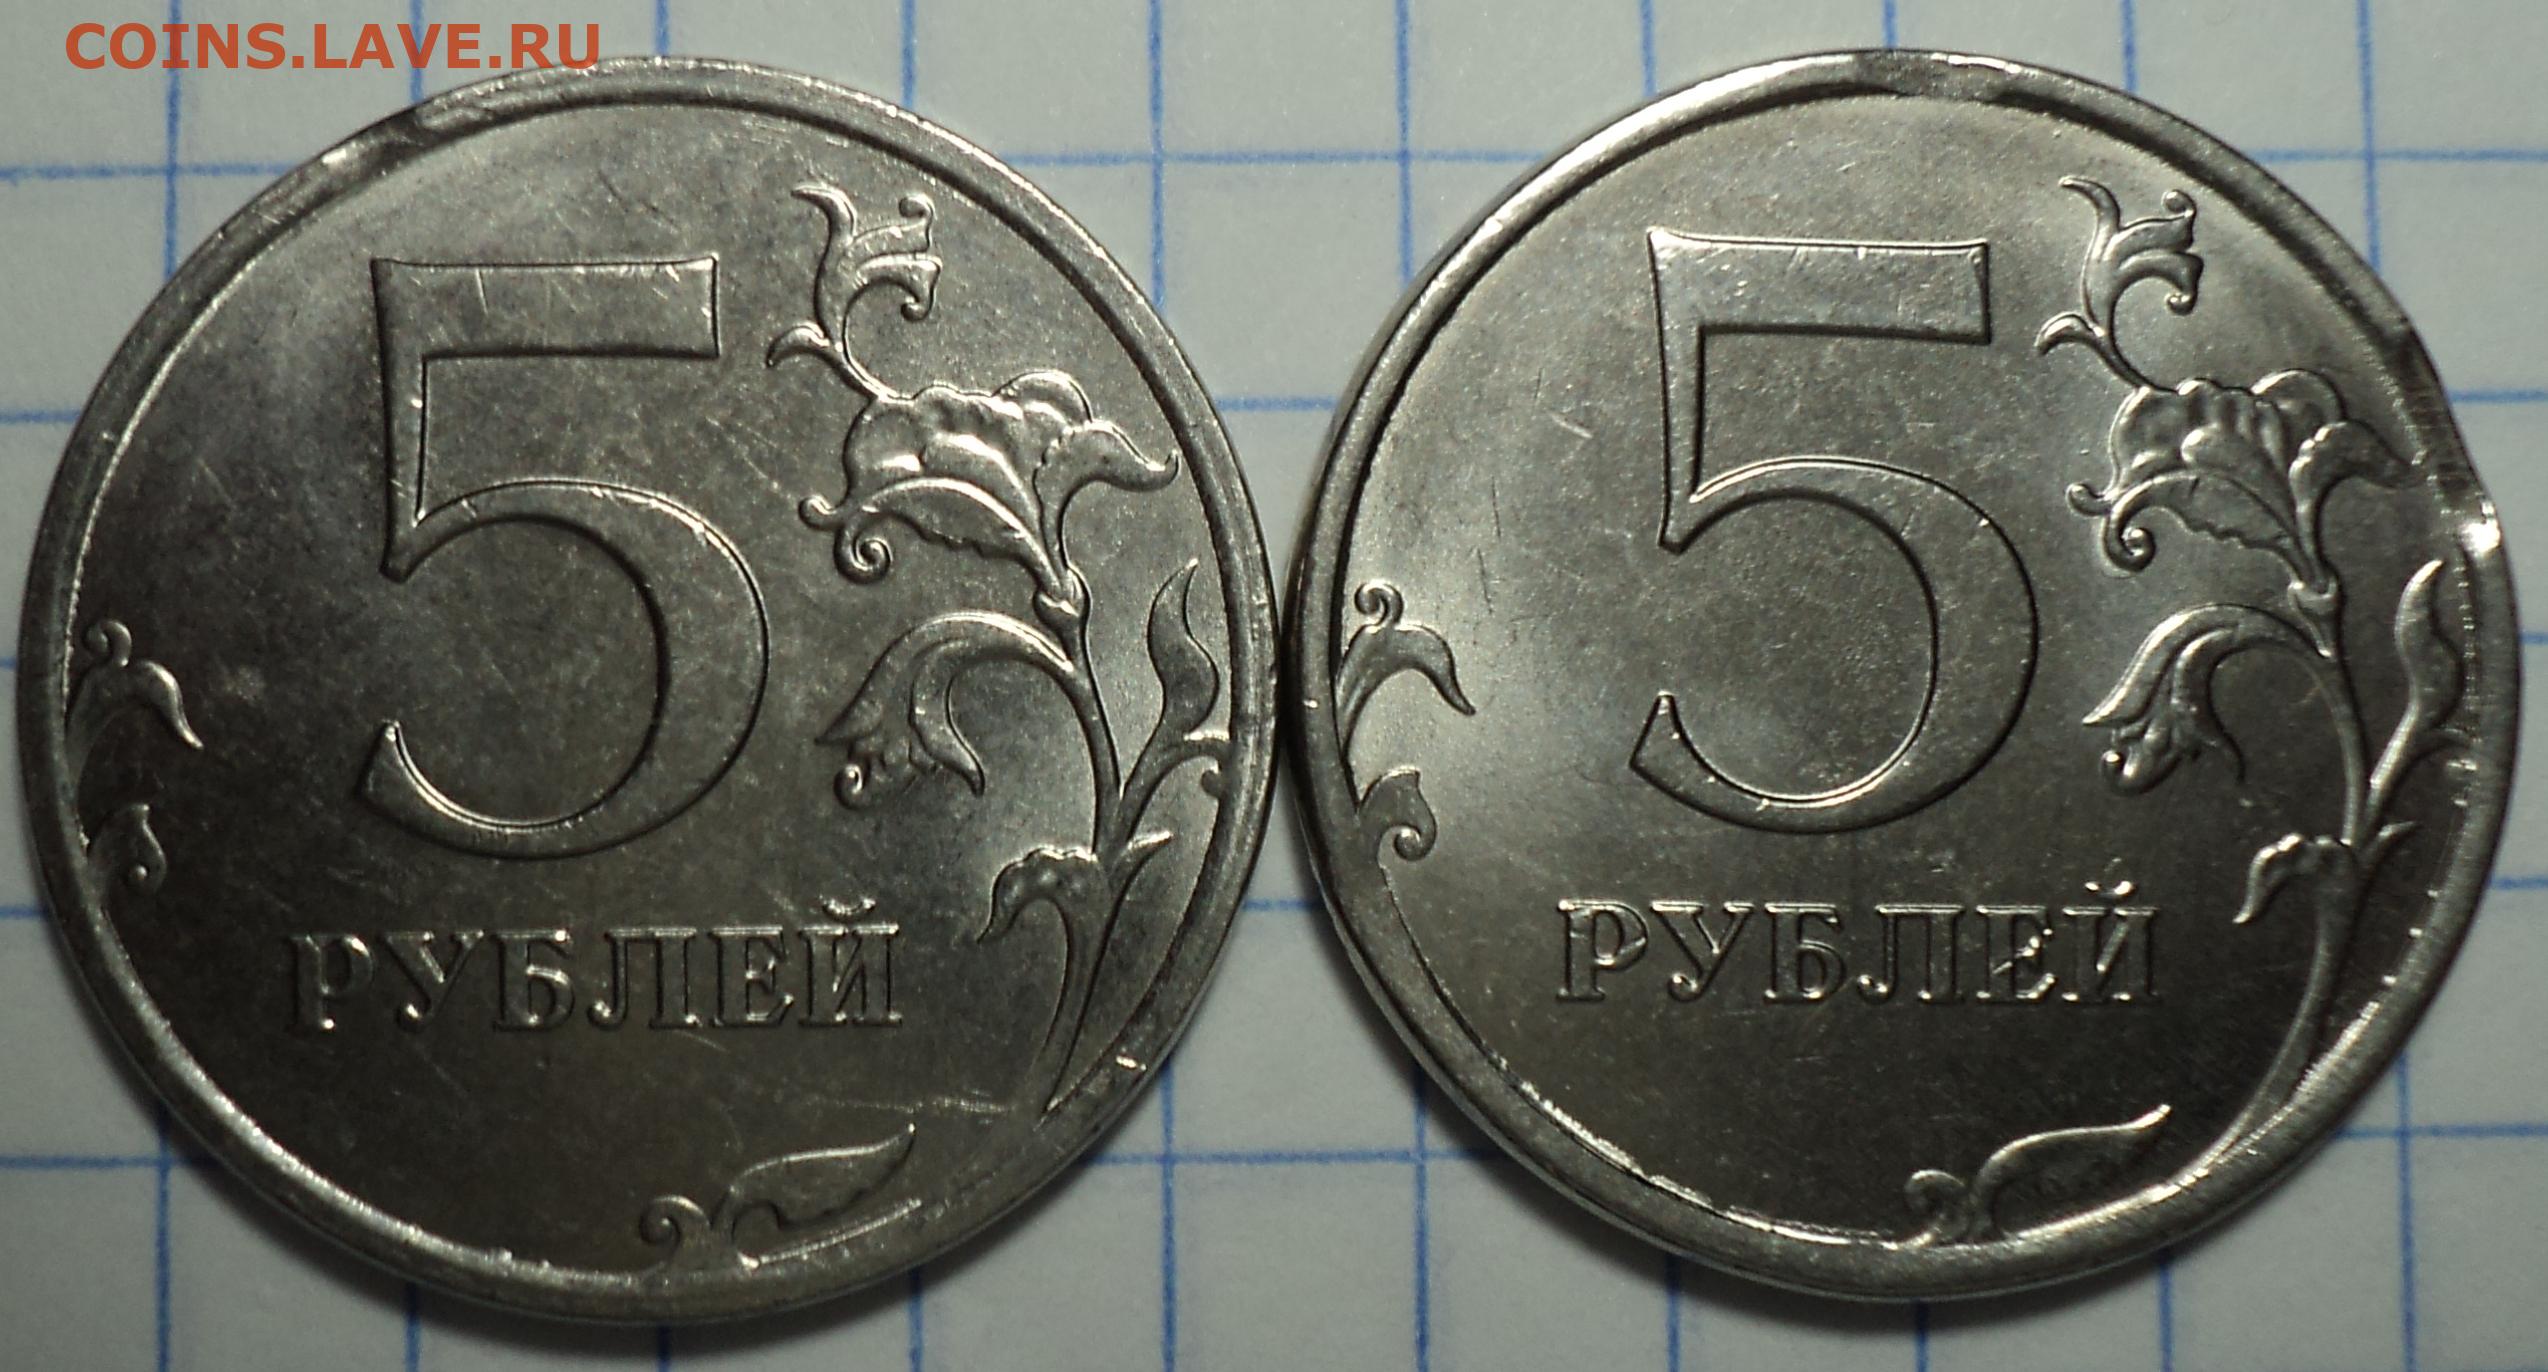 12 рублей 80. Выкус монета 5 копеек. 12.5 Рублей монета. 5 Копеек 98. Монета 9 рублей и 10 копеек.